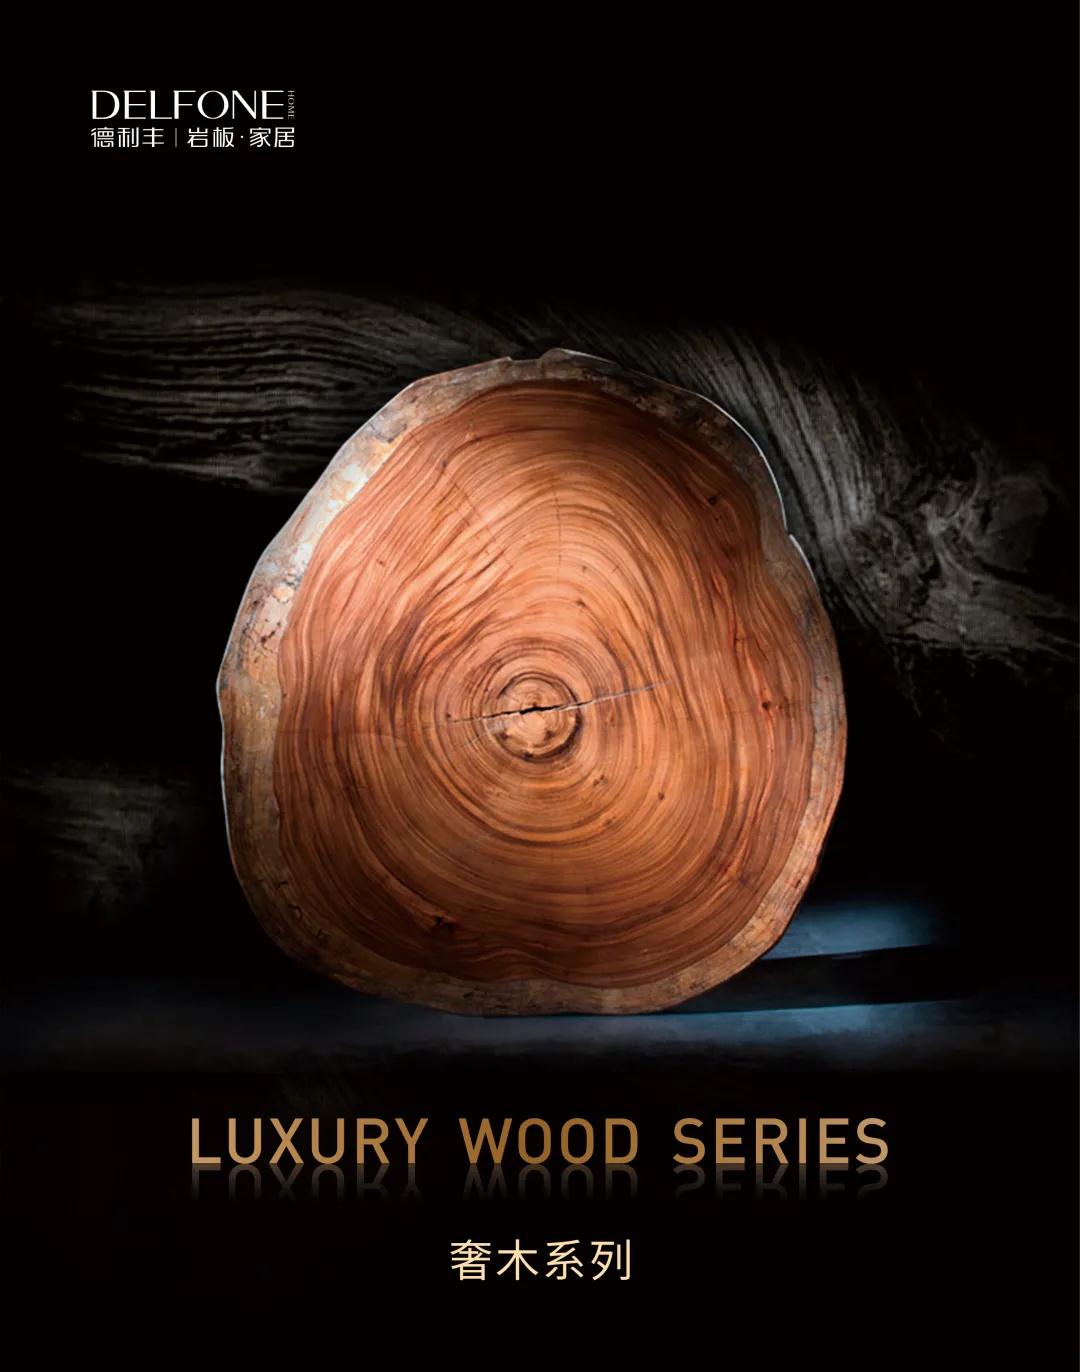 DELFONE奢木系列新品 | 乌金直纹木，与自然形态共生